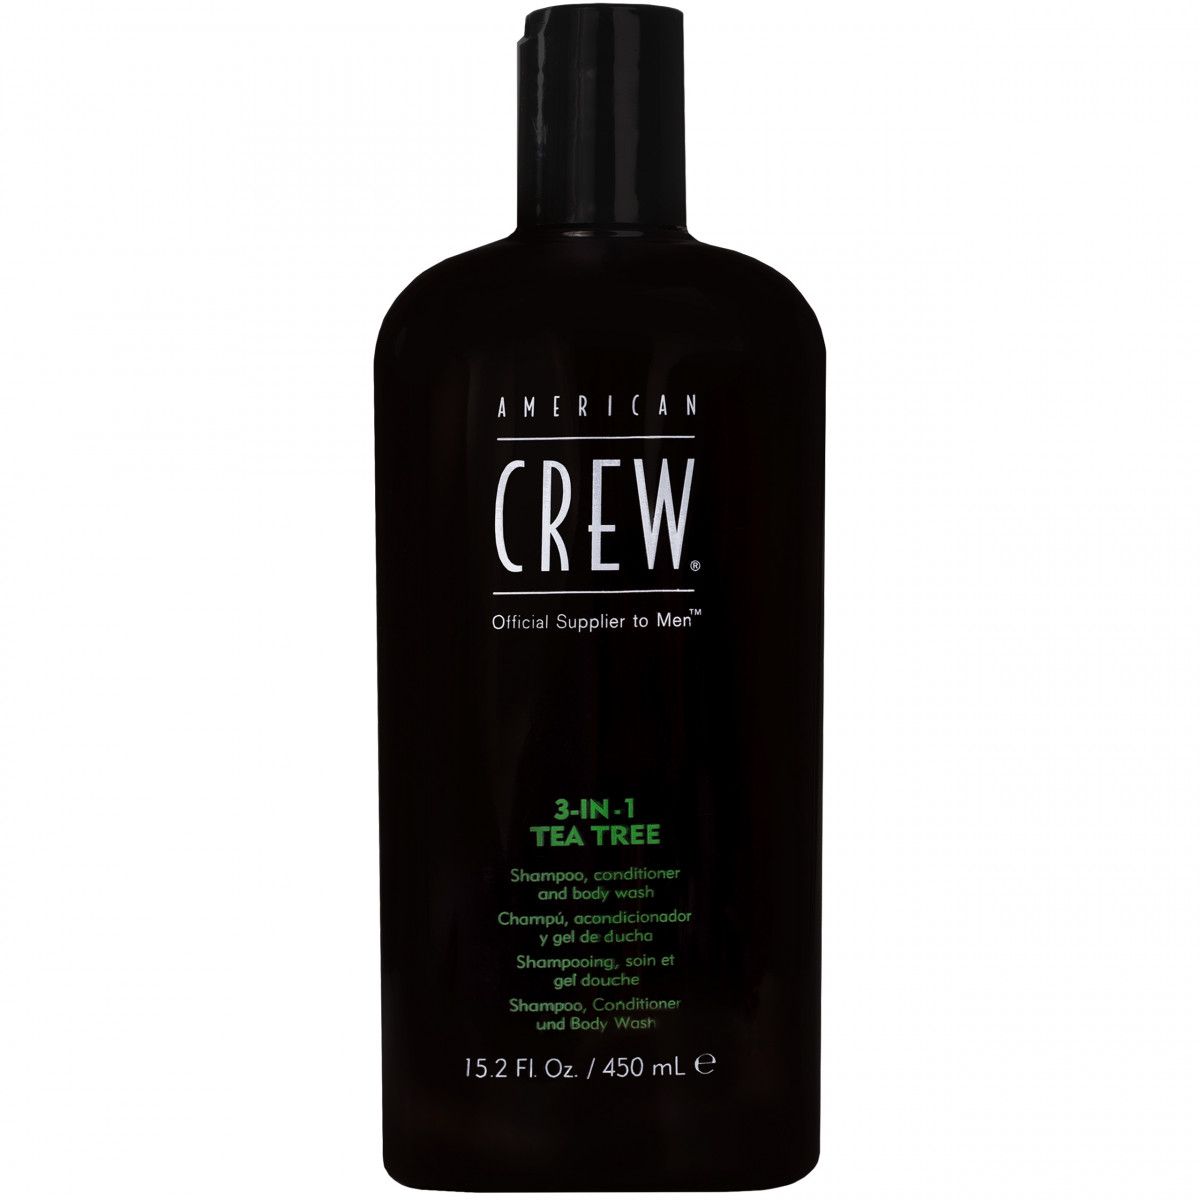 American Crew 3in1 Tea Tree - żel pod prysznic 3w1, do mycia ciała i pielęgnacji włosów, 450ml